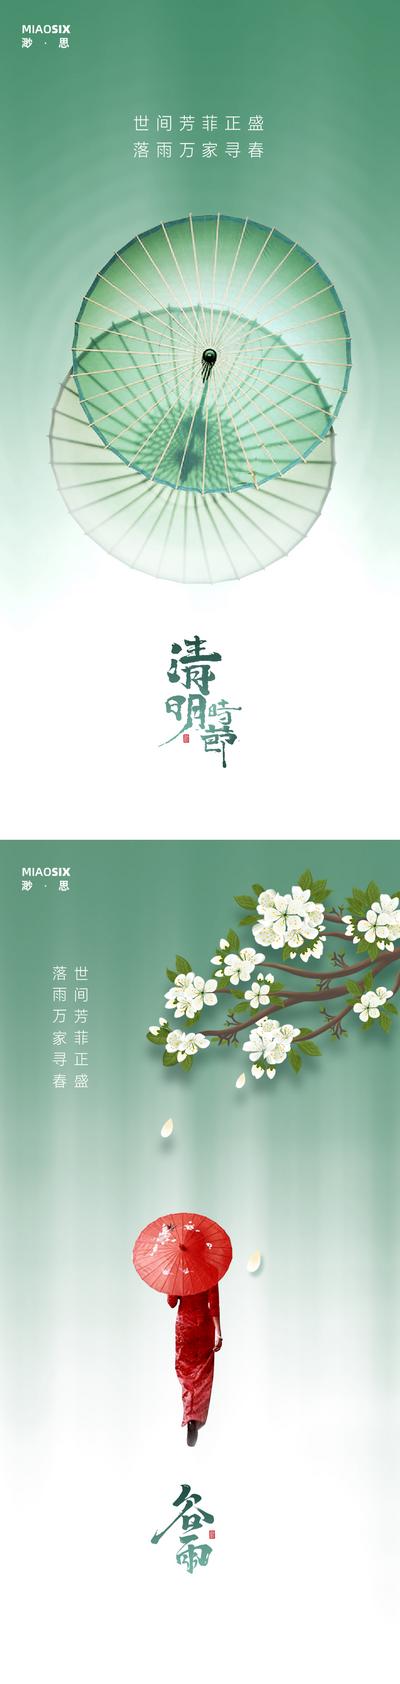 南门网 海报 中国传统节日 房地产 清明节 谷雨 花朵 涟漪 雨水 系列